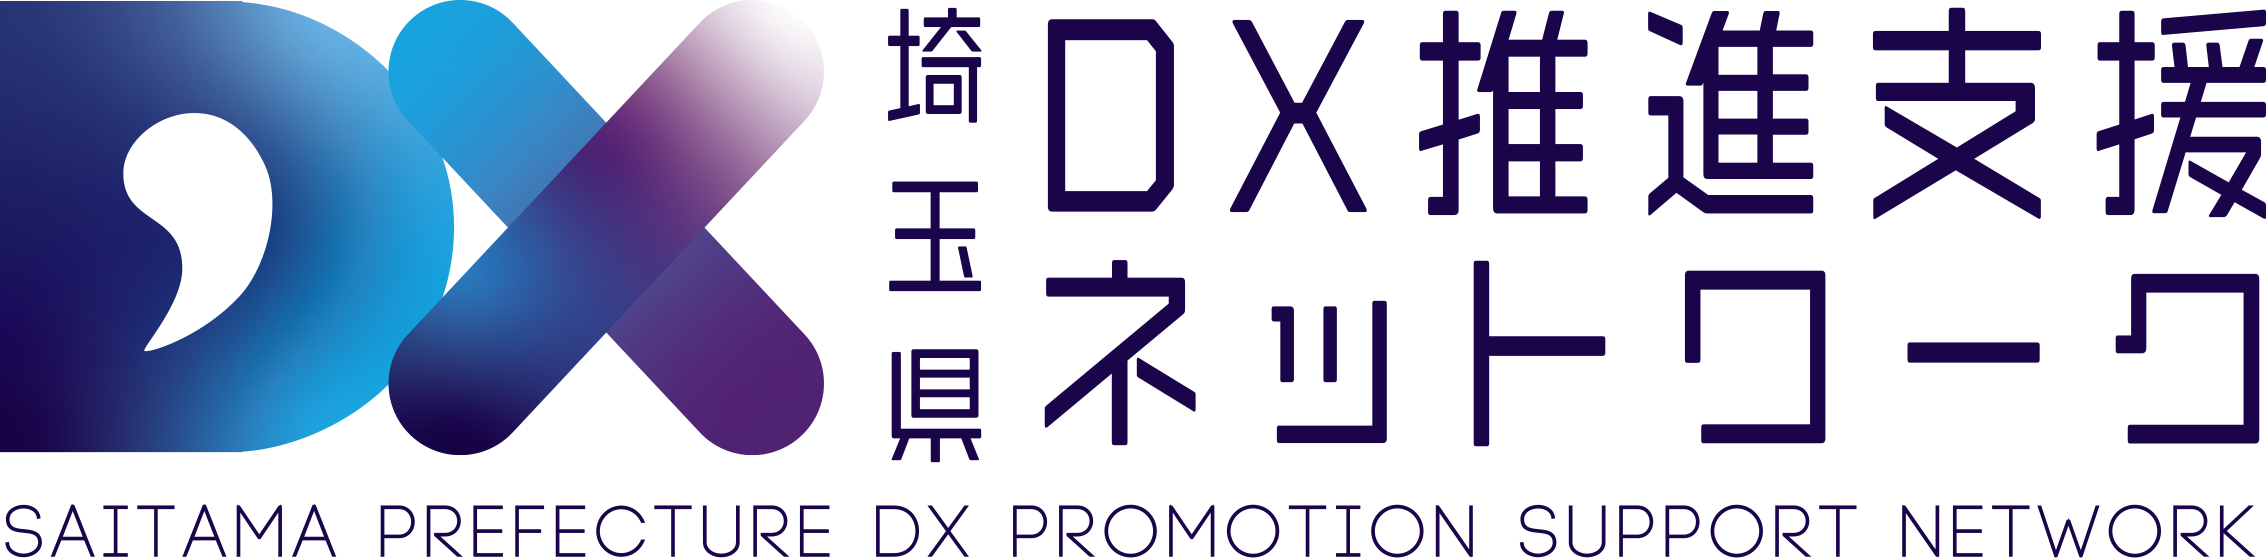 埼玉県DX推進支援ネットワーク